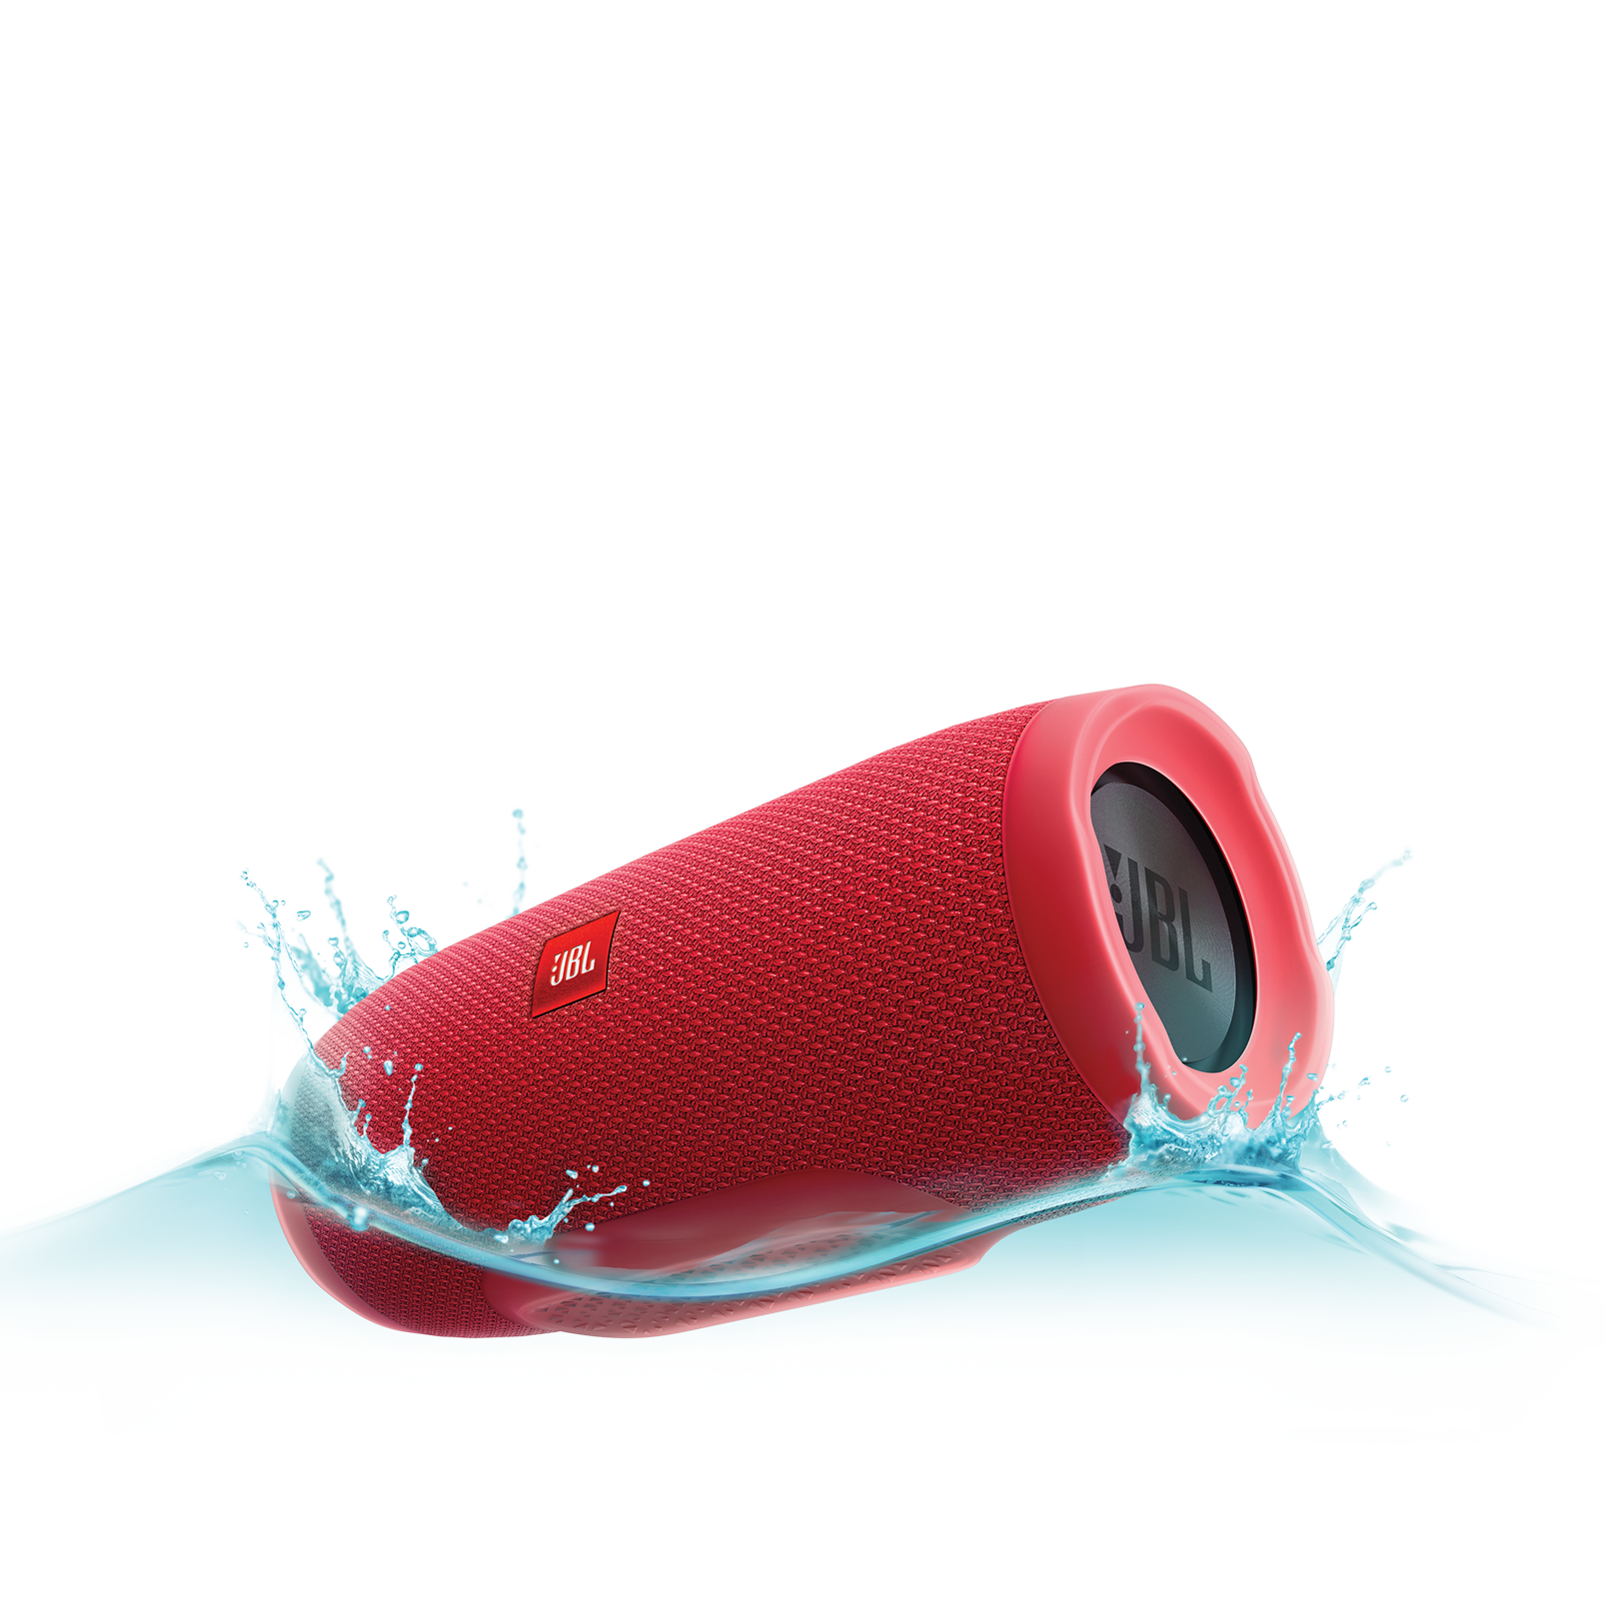 JBL Charge 3 (Teal) Waterproof Portable Bluetooth Speaker